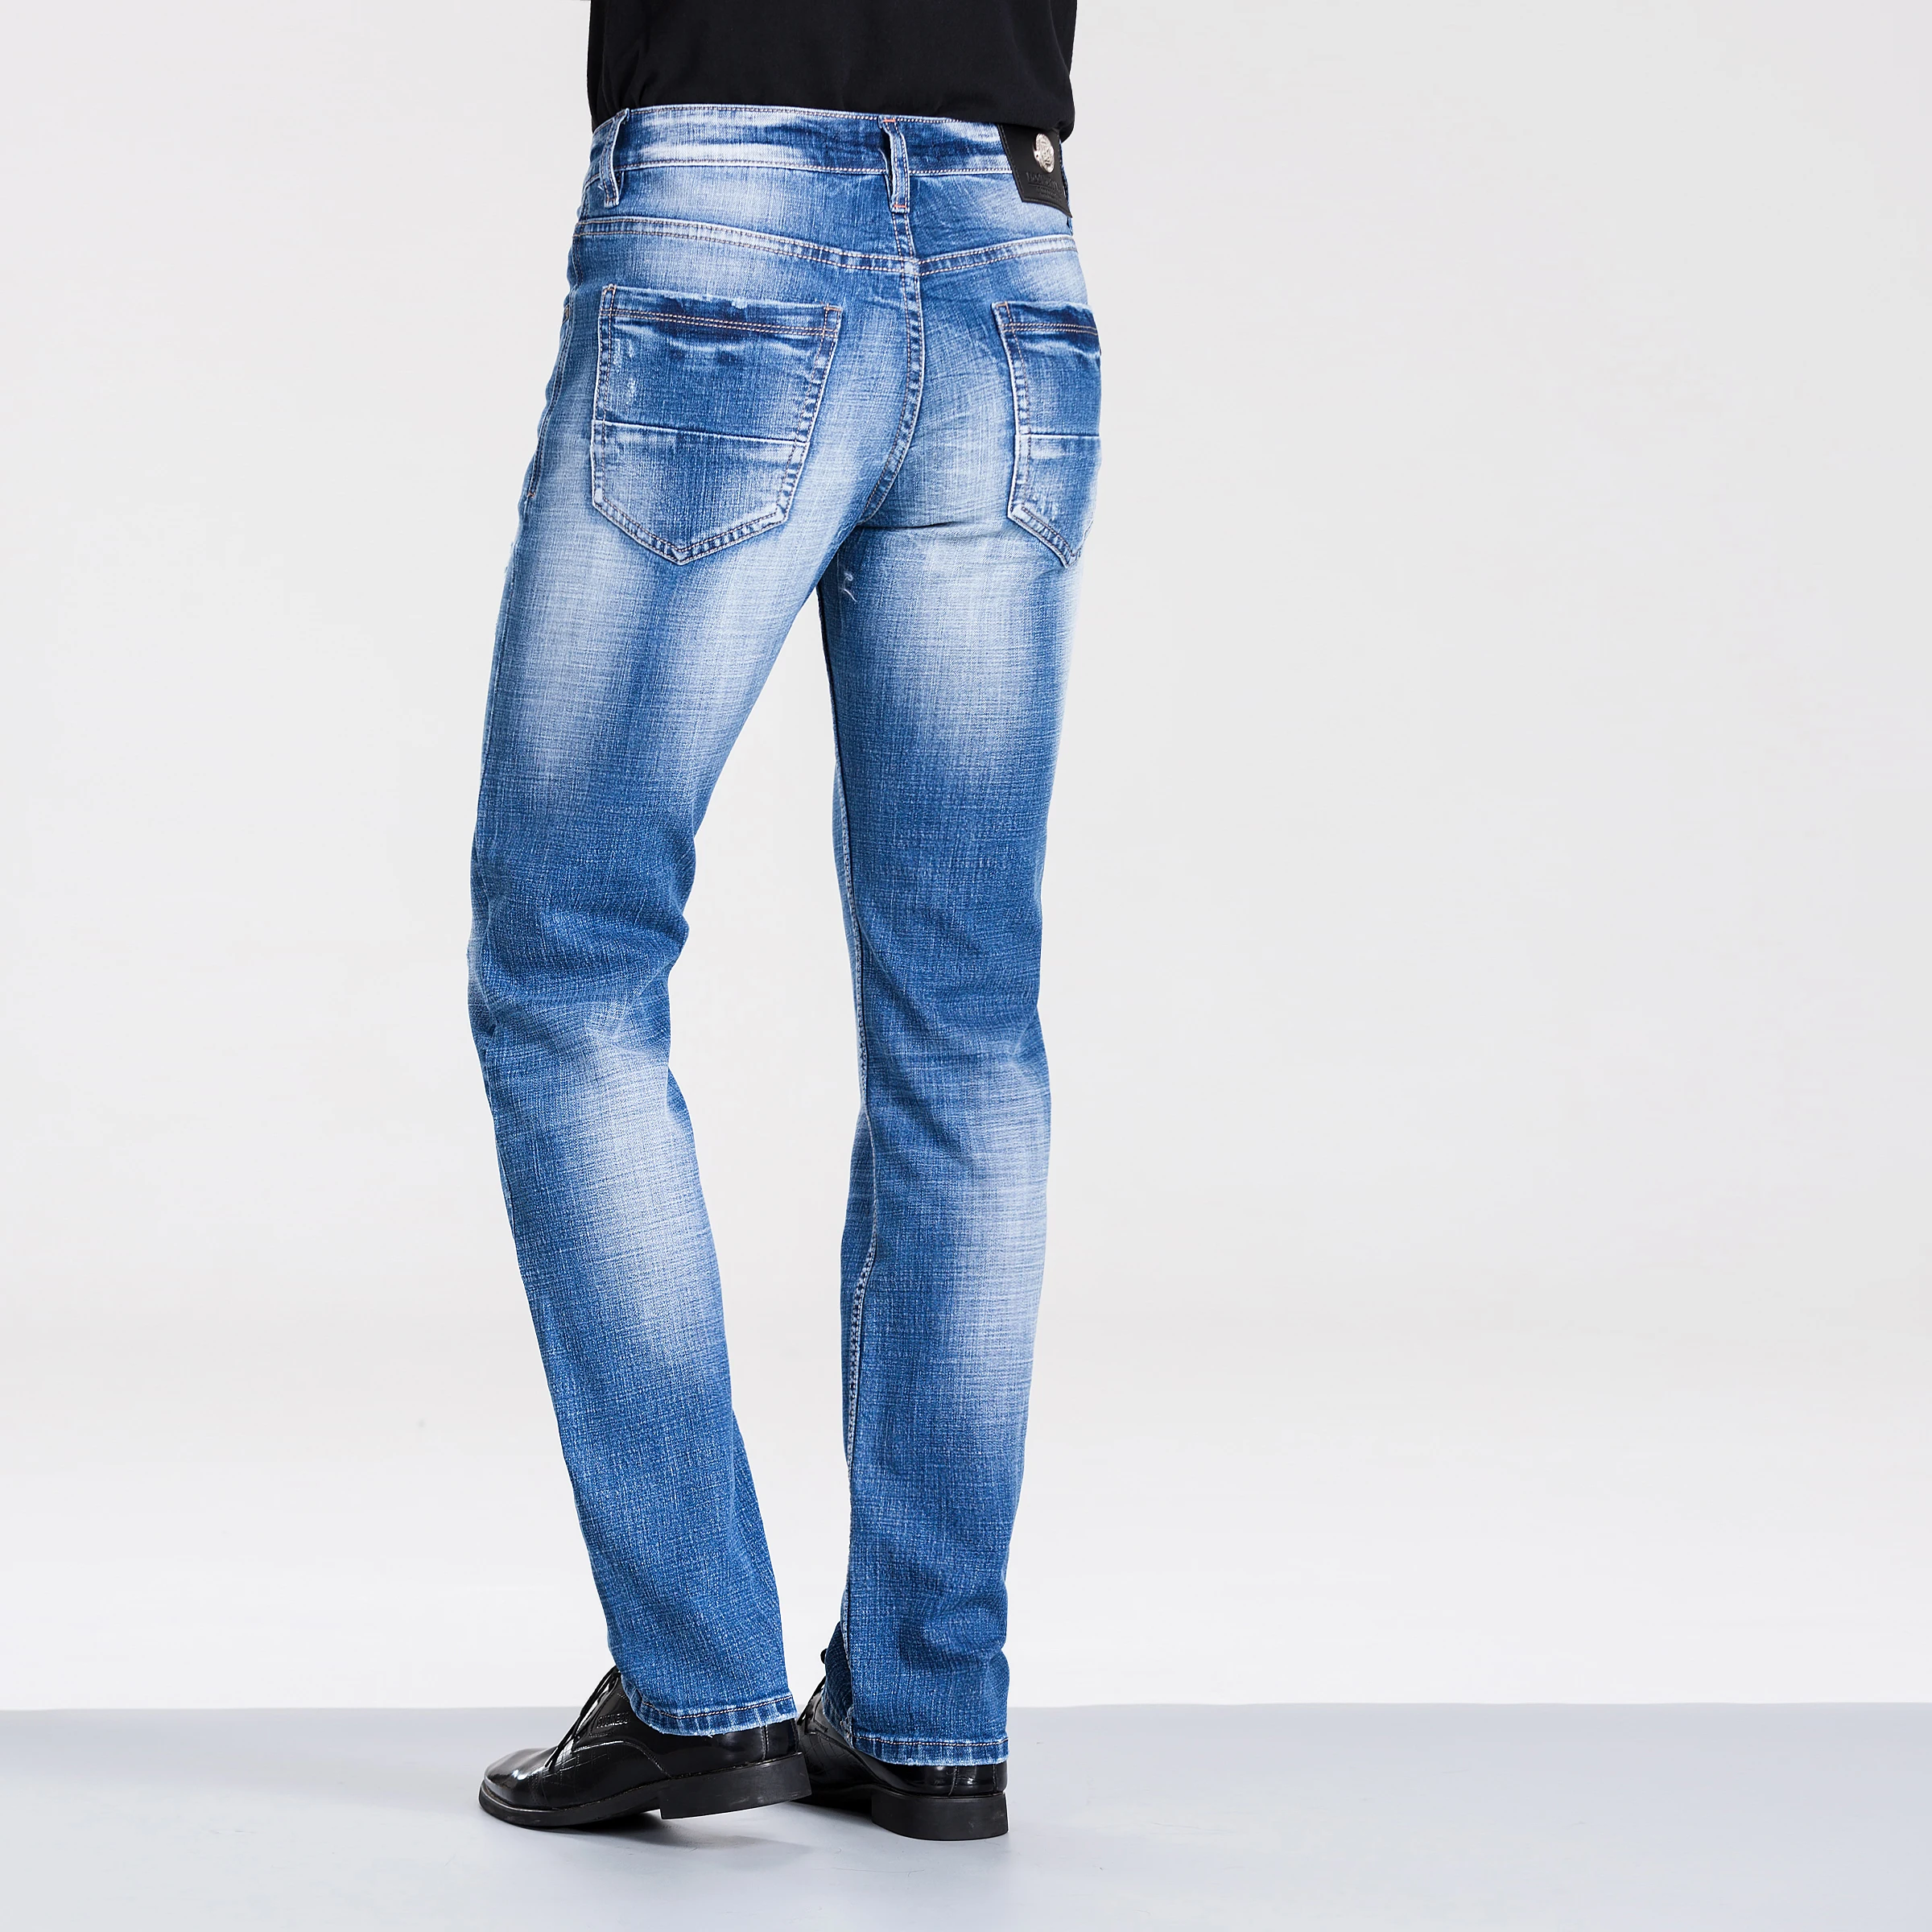 Grosshandel Die Besten Jeans Fur Manner Kaufen Sie Die Besten Die Besten Jeans Fur Manner Stucke Aus China Die Besten Jeans Fur Manner Grossisten Online Alibaba Com